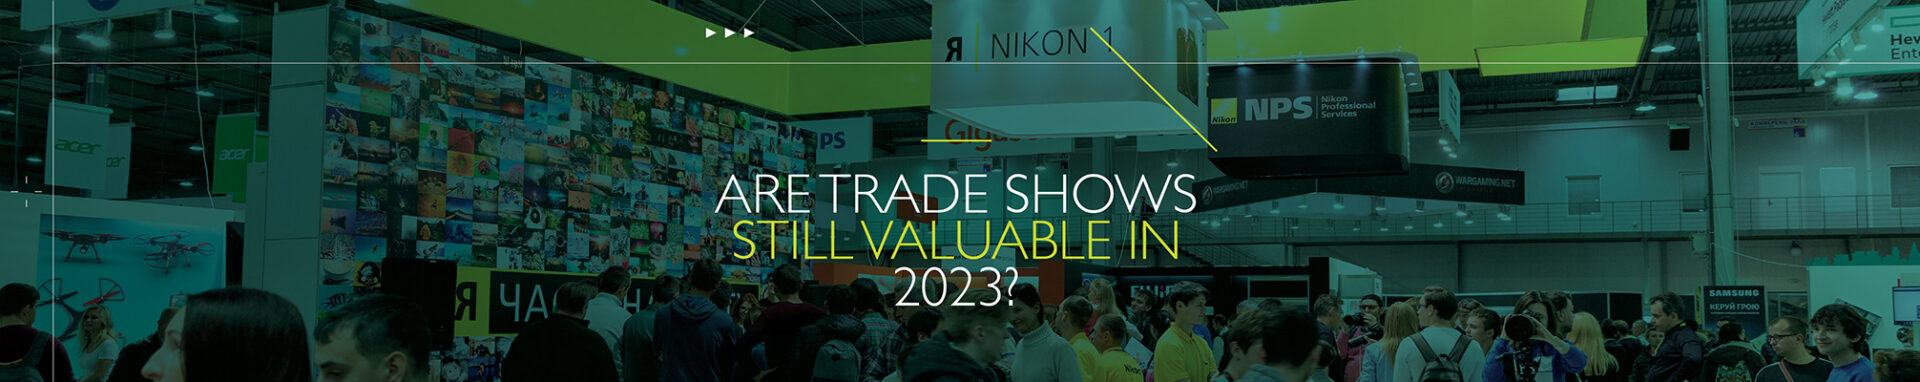 07 11 23 Trade Show Value 2000x400 